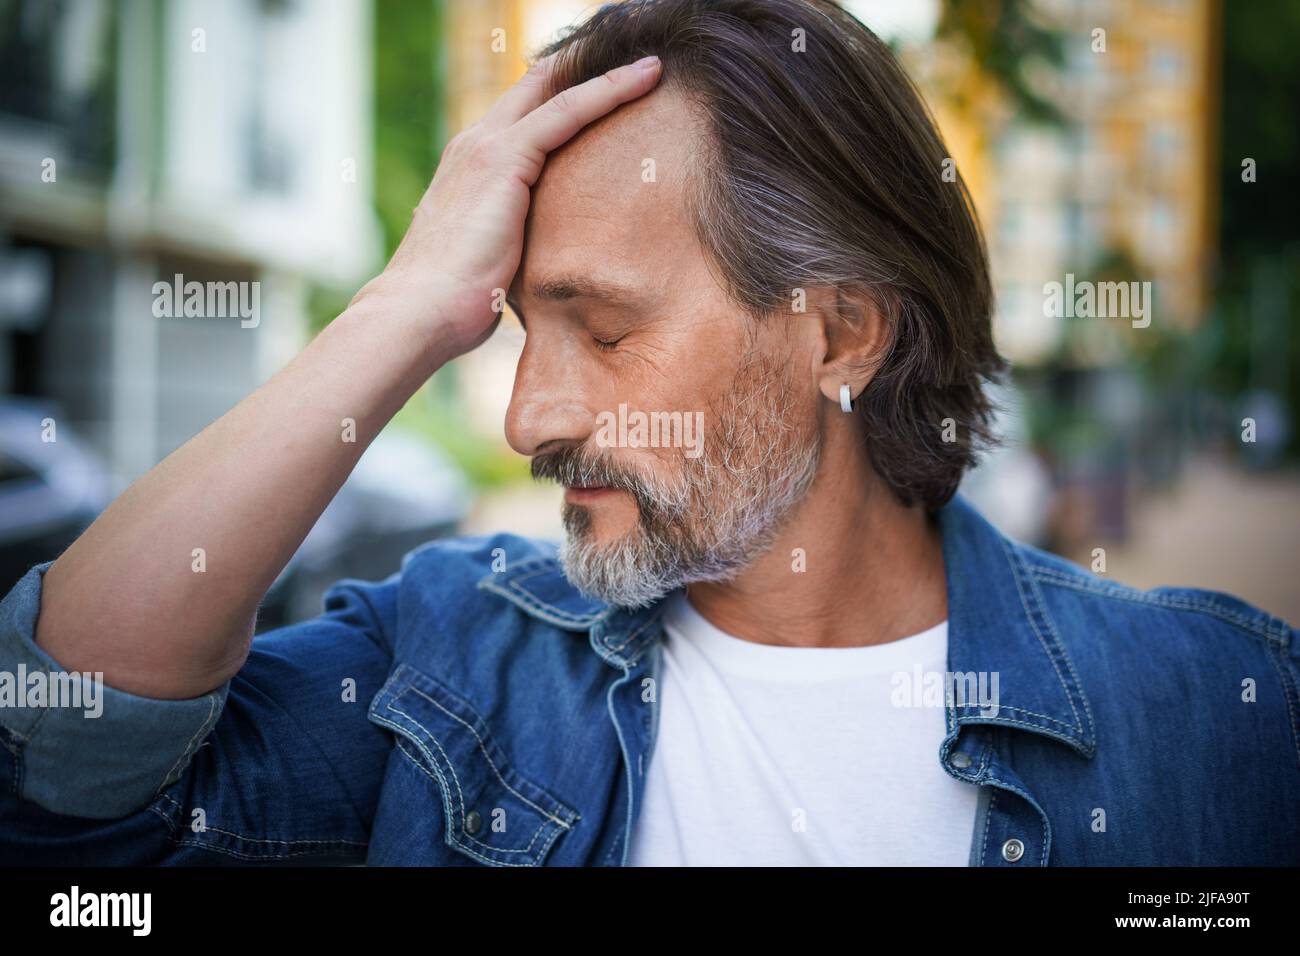 Homme beau passer la crise d'âge moyen touchant son front regardant émotionnellement épuisé. L'expérience des maux de tête, le stress mûr homme beau debout à l'extérieur des rues de la vieille ville européenne. Banque D'Images